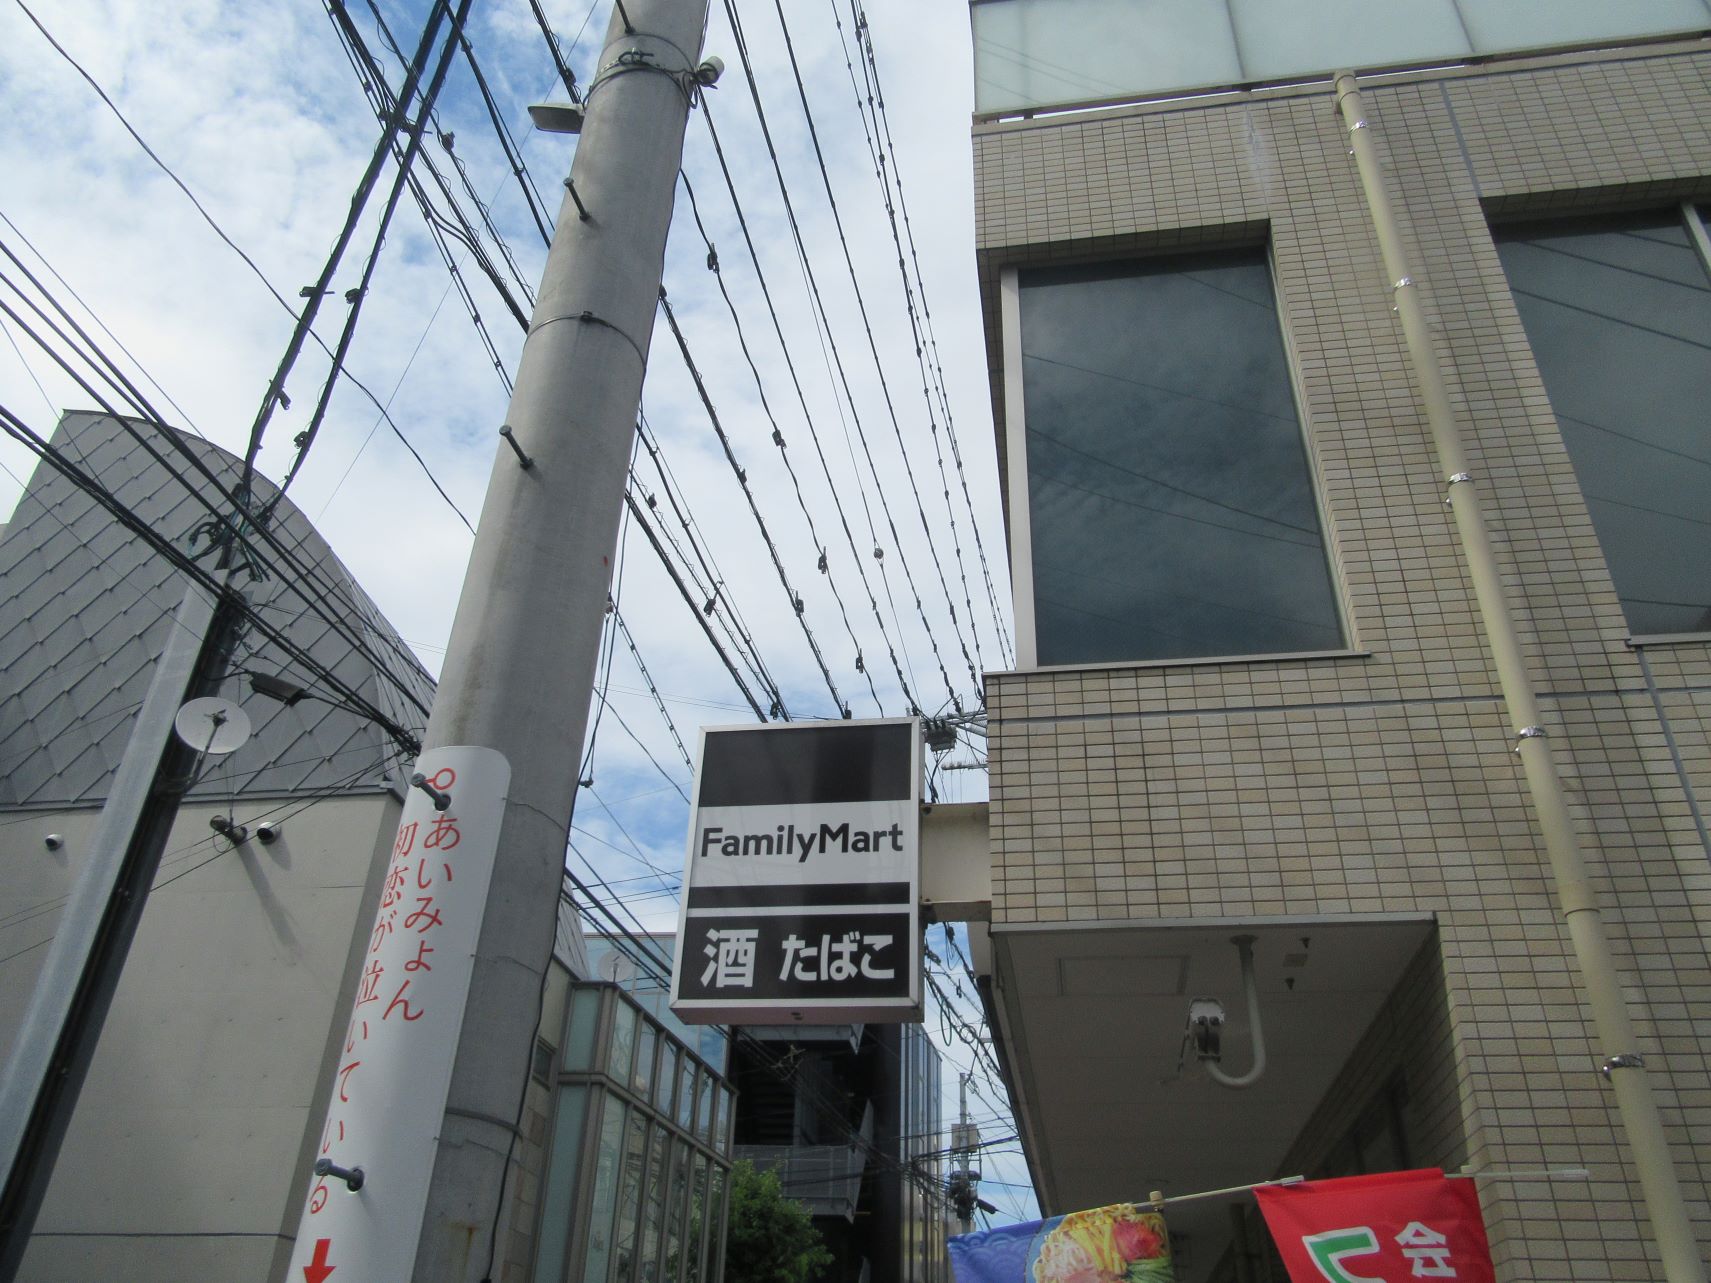 熊本市街地にある、看板の色が違うファミリーマート。